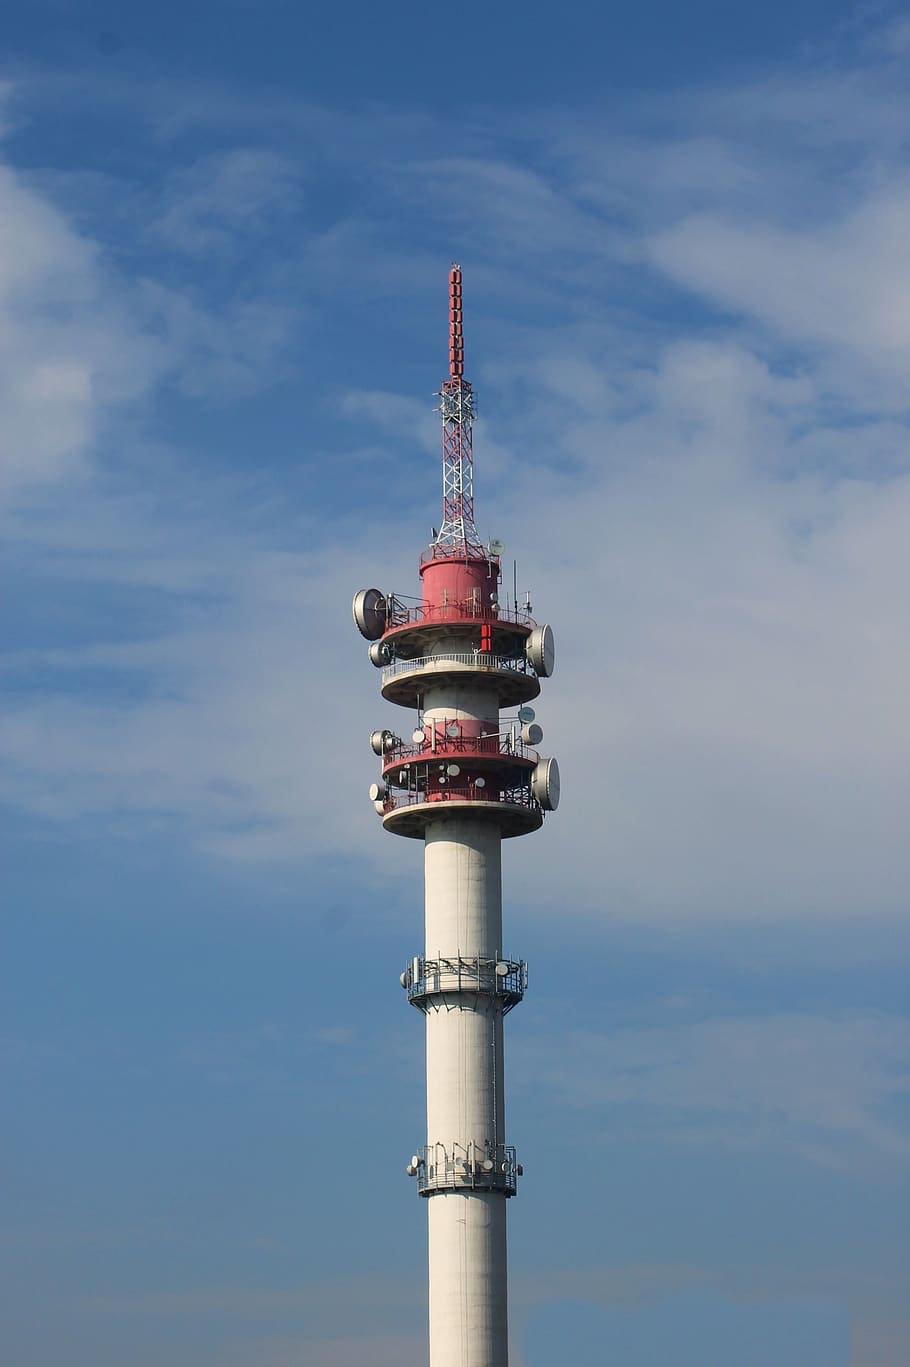 tower, today, rádiótorony, architectural, sky, communication, transmitter, mobile network, city, cloud - sky